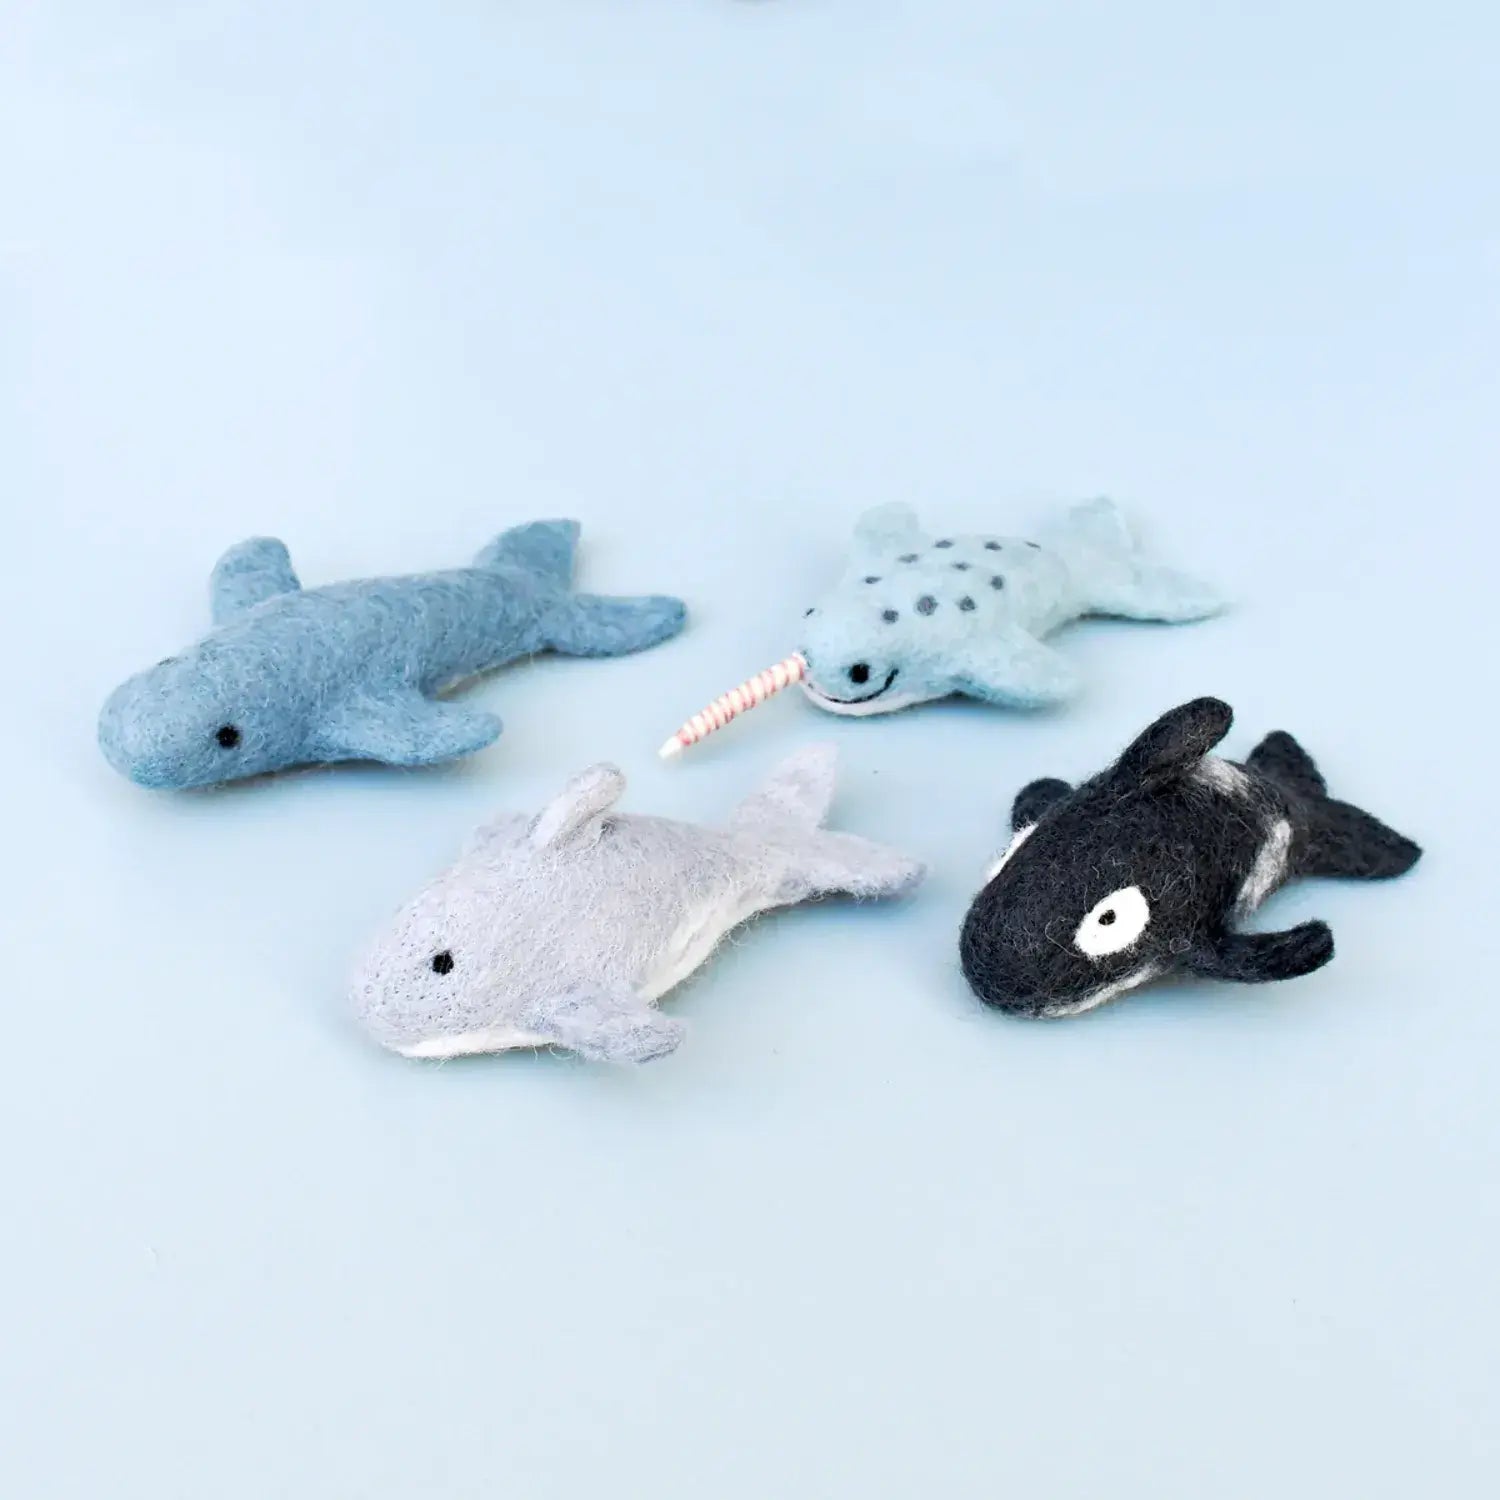 Felt Orca Killer Whale Toy by Tara Treasures